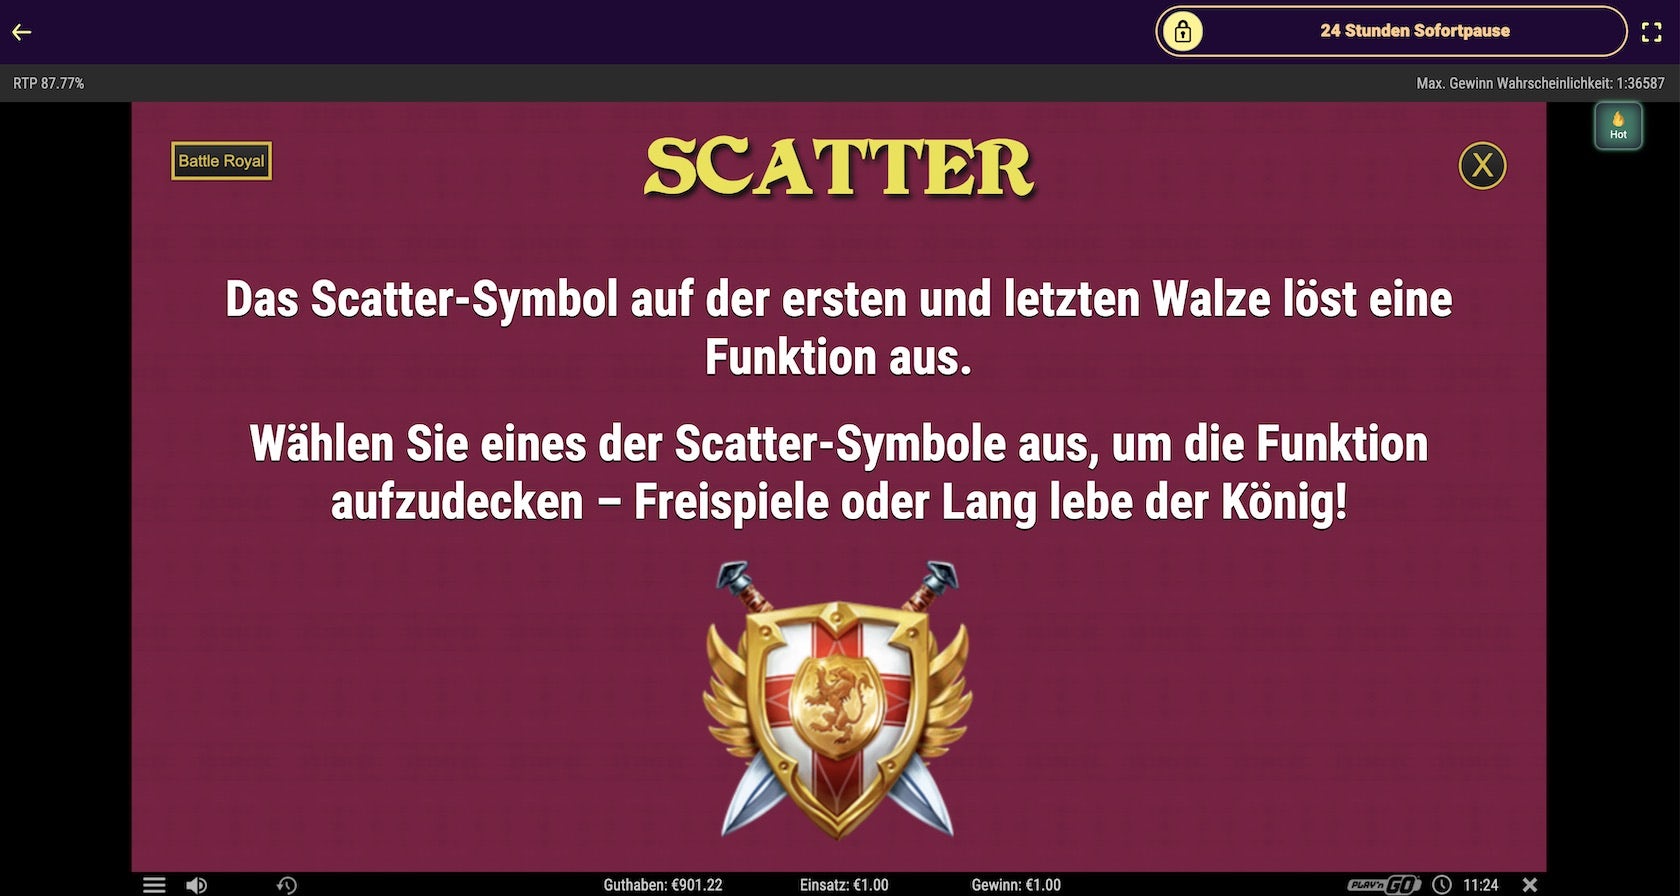 battle-royal-scatter-freispiele (1)